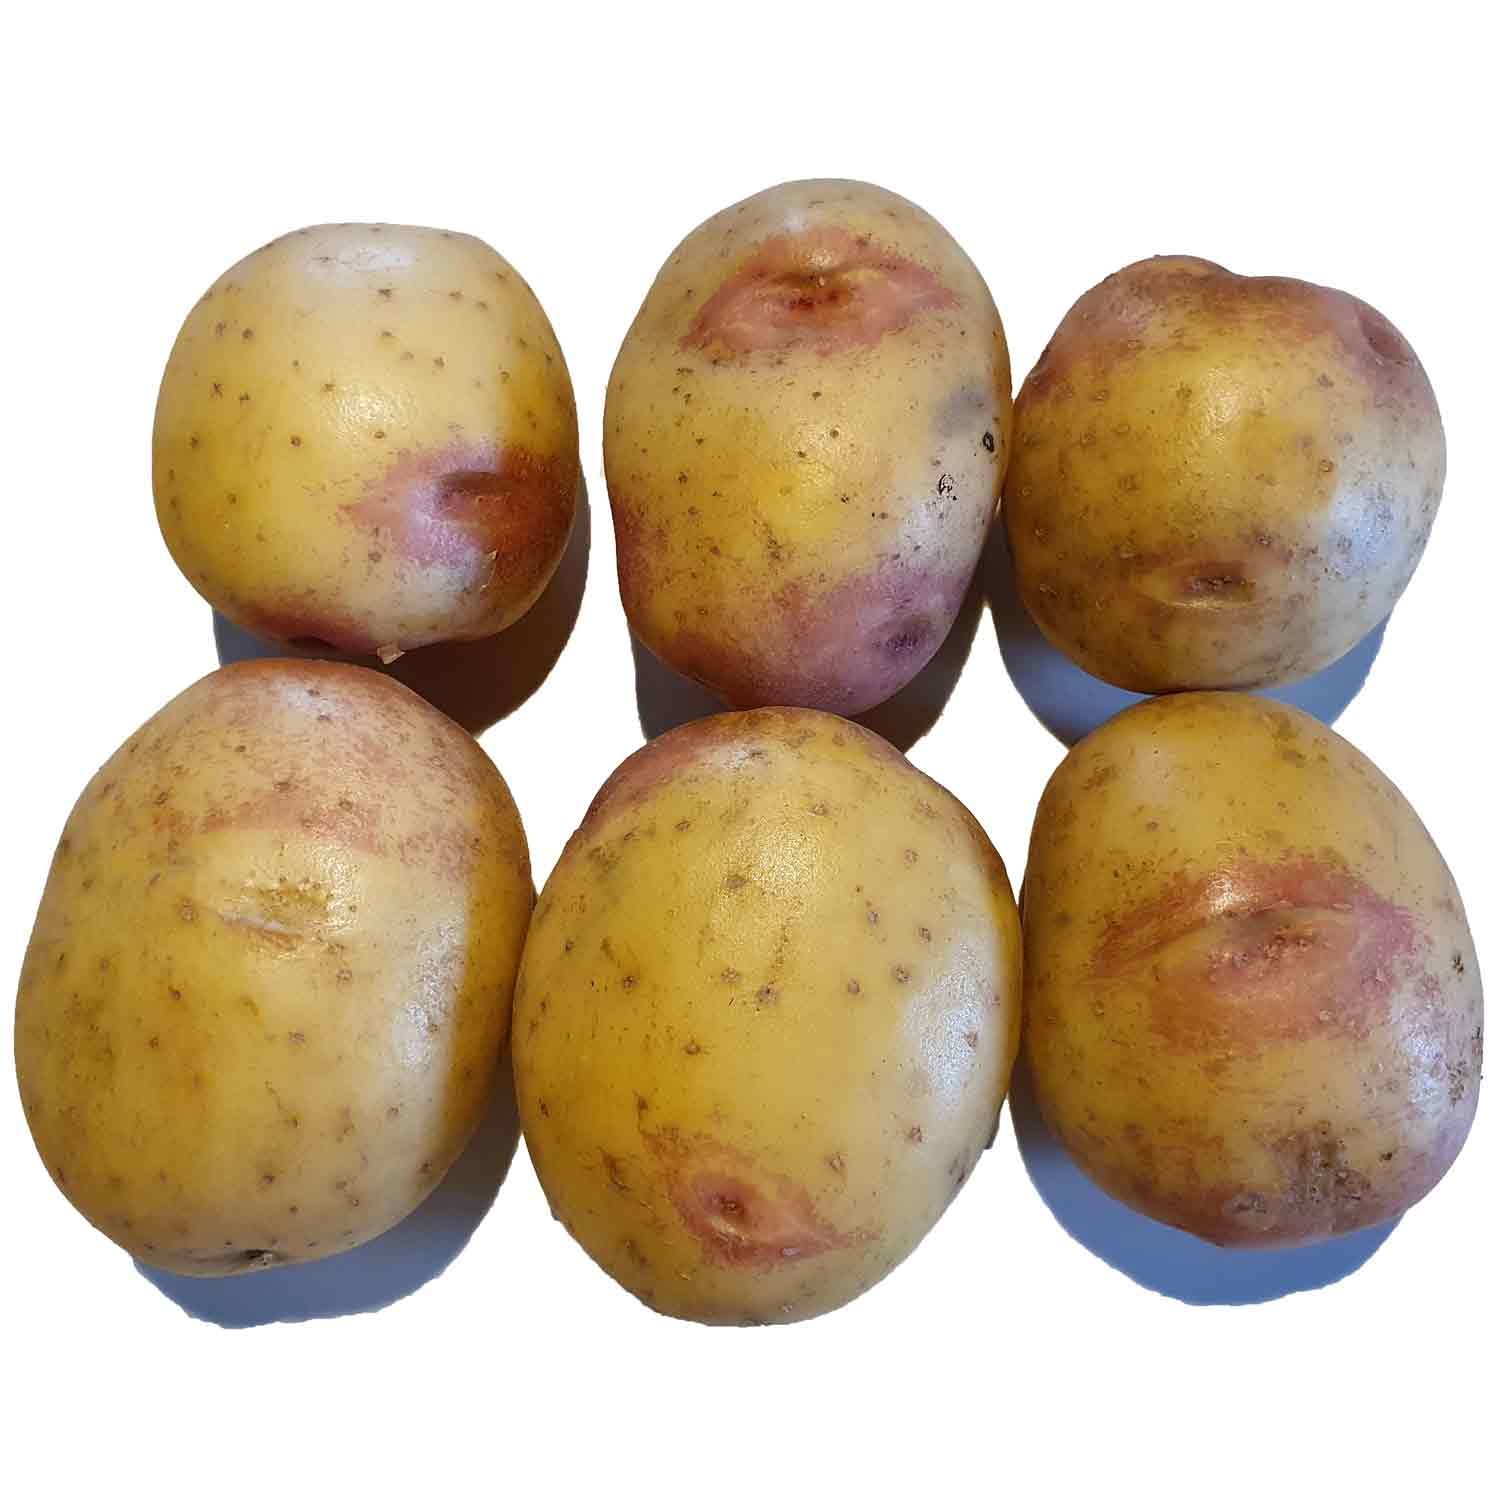 Læggekartoffel - King Edward  1,5 kg